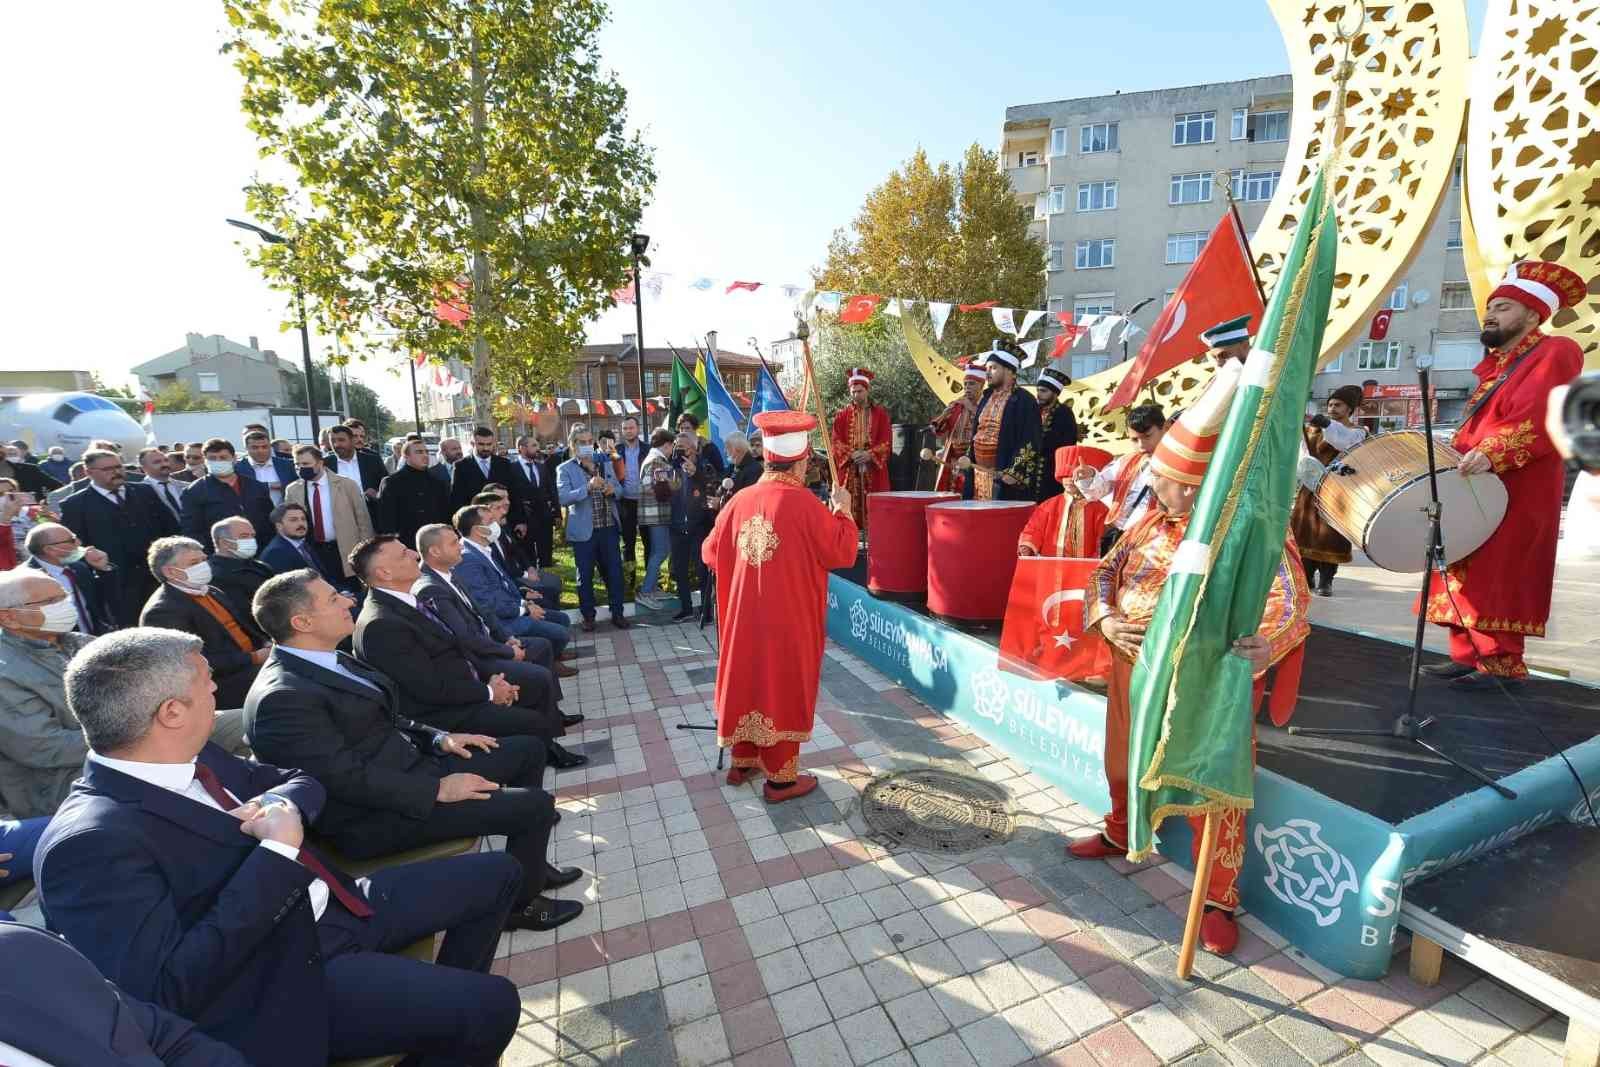 Başbuğ Alparslan Türkeş Parkı törenle açıldı #tekirdag